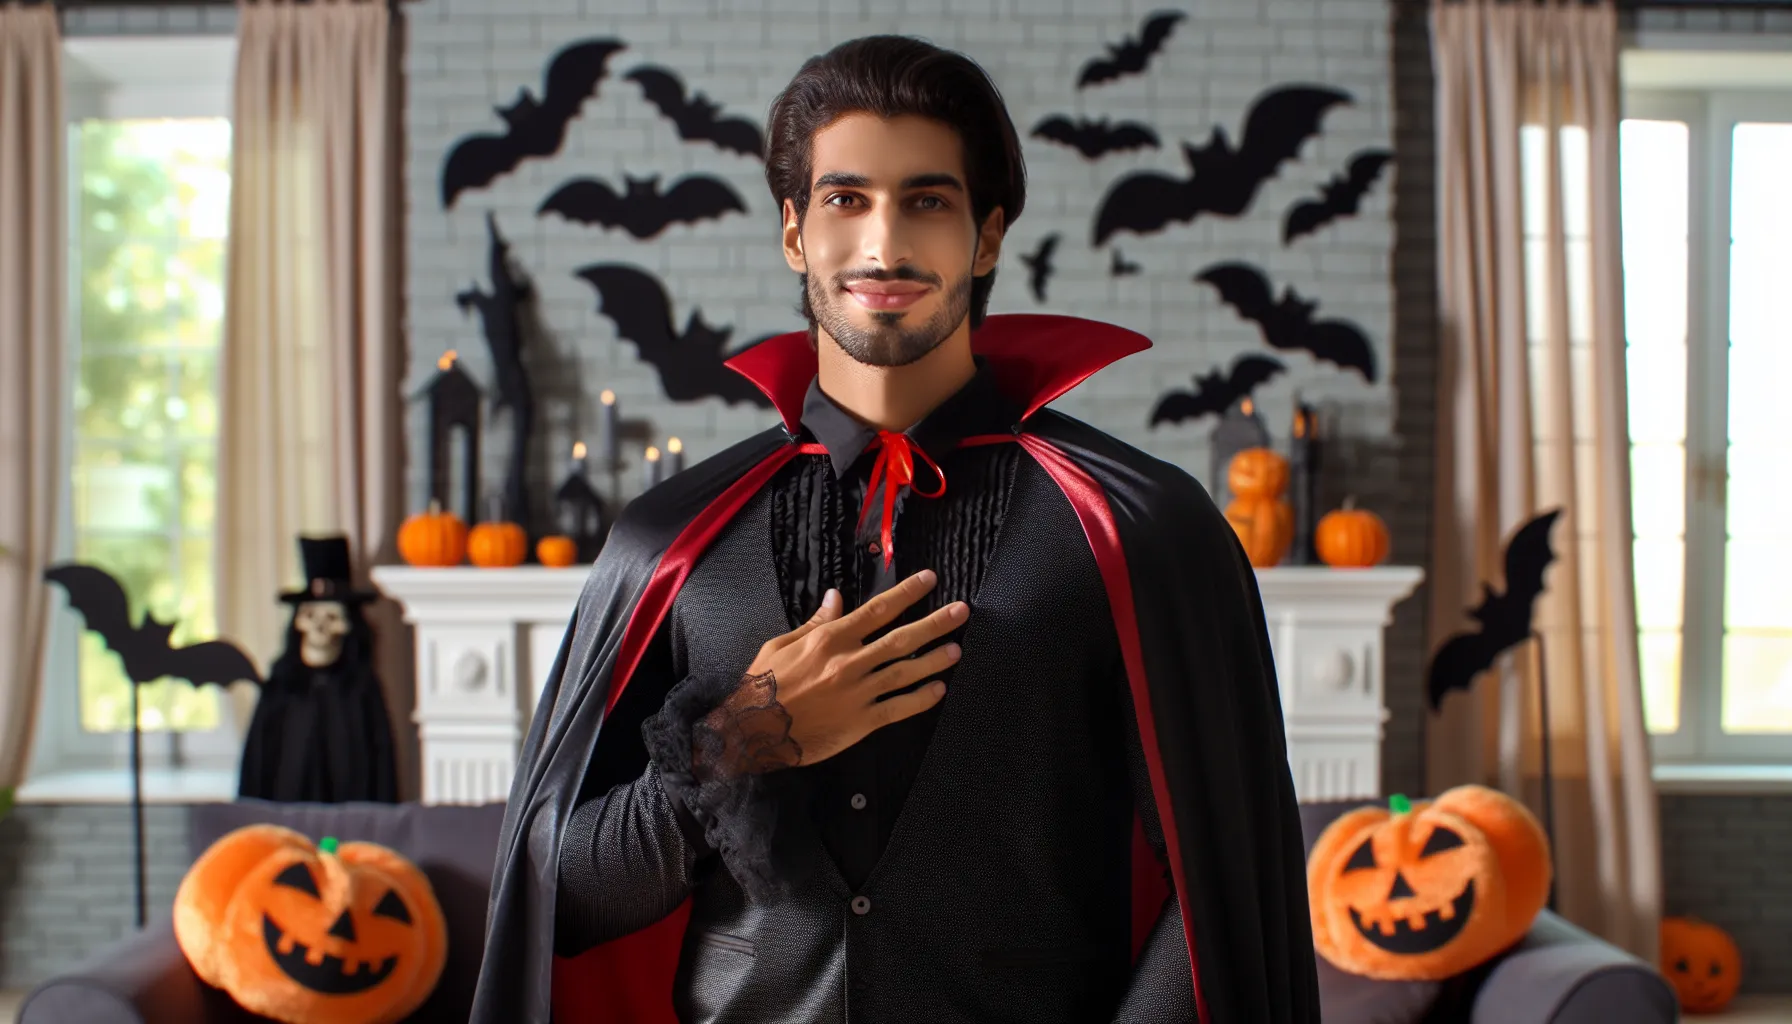 Cristiano disfrazado de vampiro para celebrar Halloween.